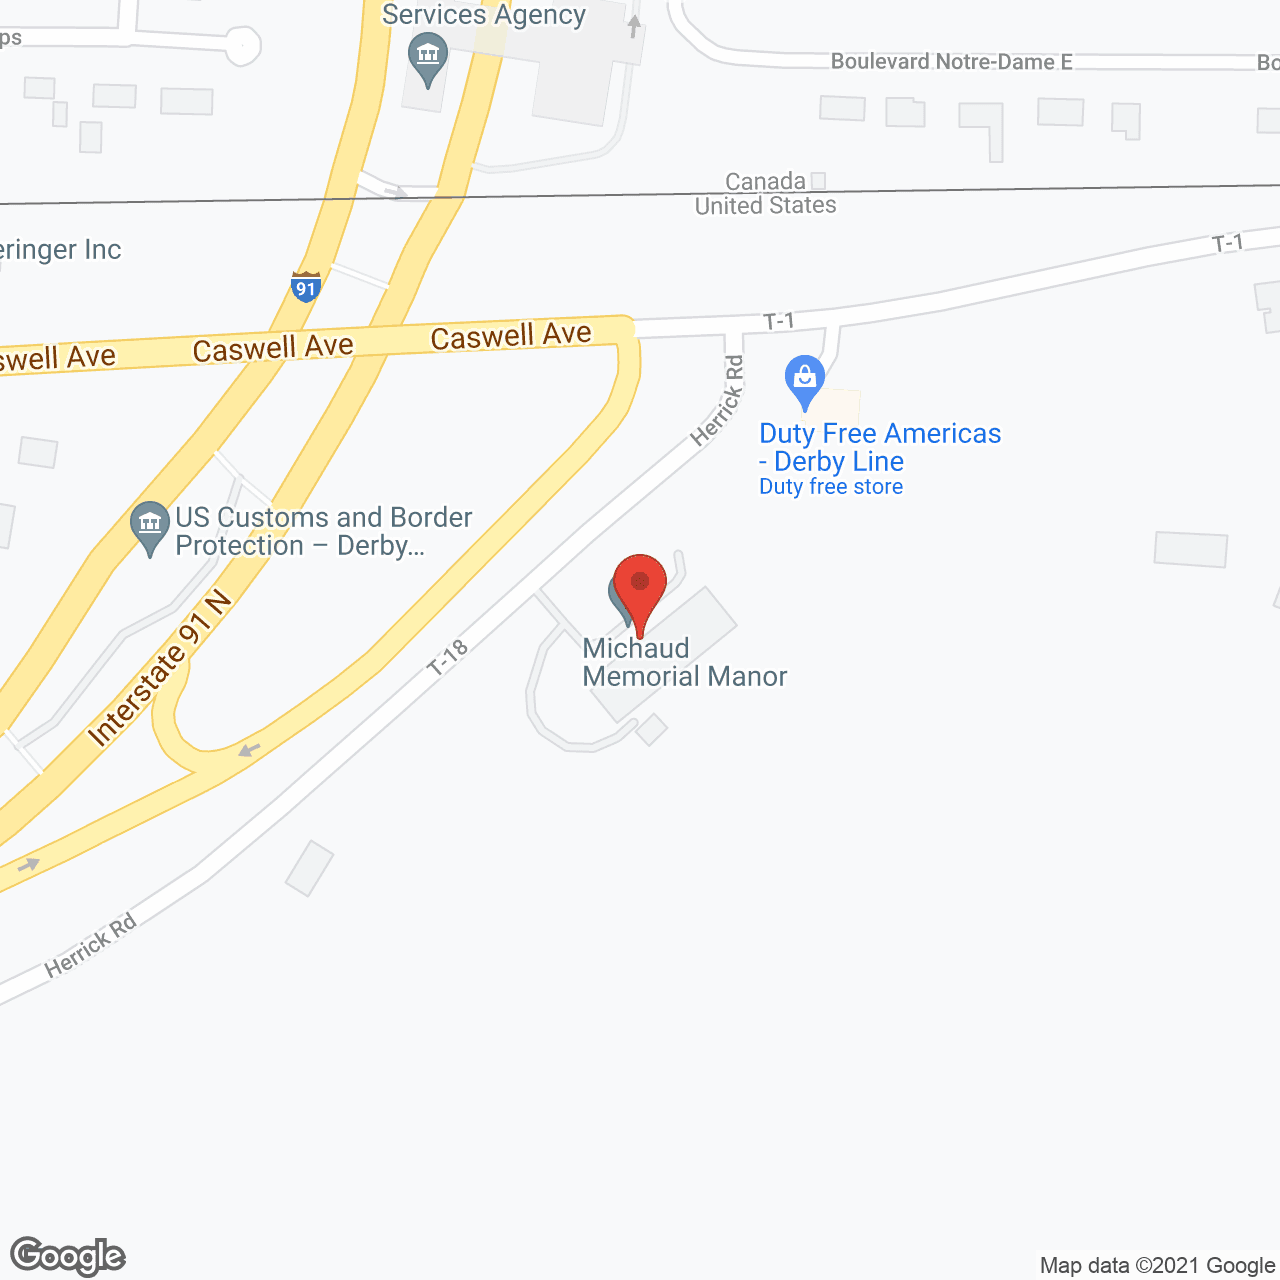 Michaud Memorial Manor in google map